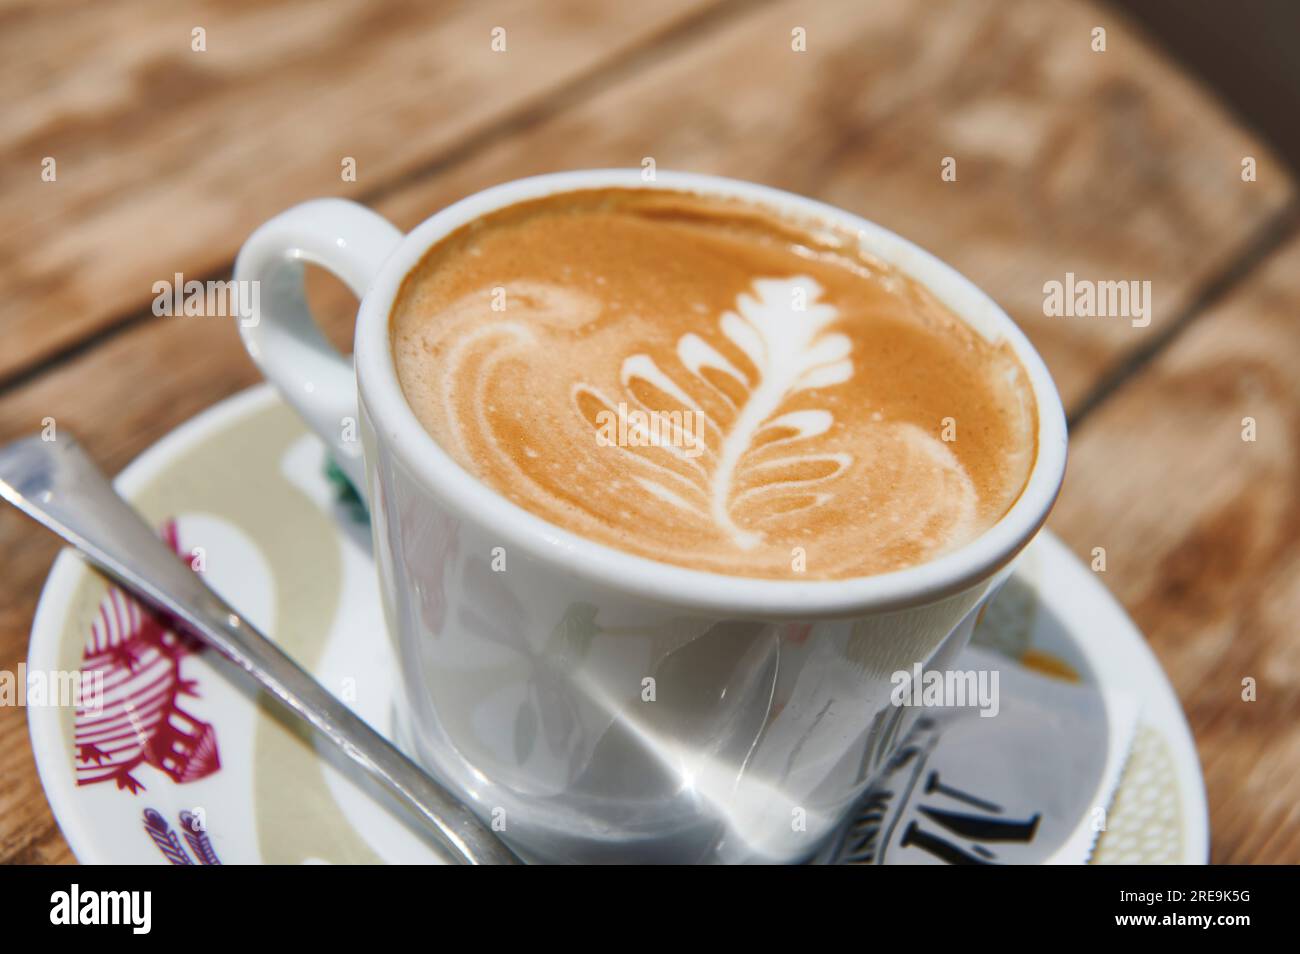 Café avec du lait dans une tasse blanche avec dessin floral sur la surface Banque D'Images